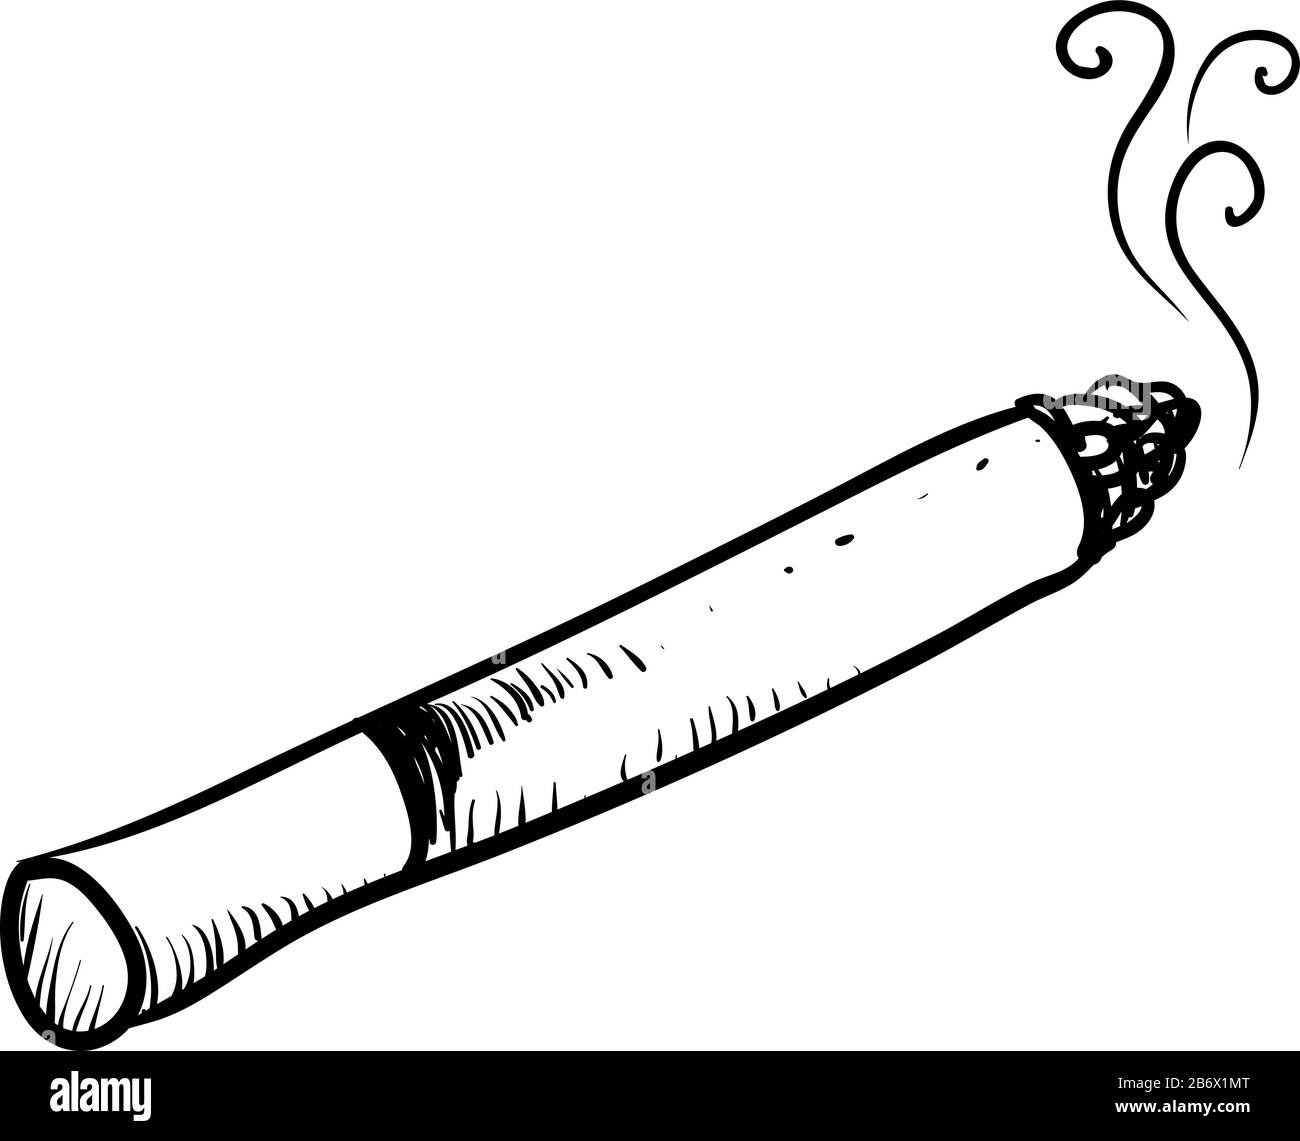 Cigarette drawing Banque d'images détourées - Alamy